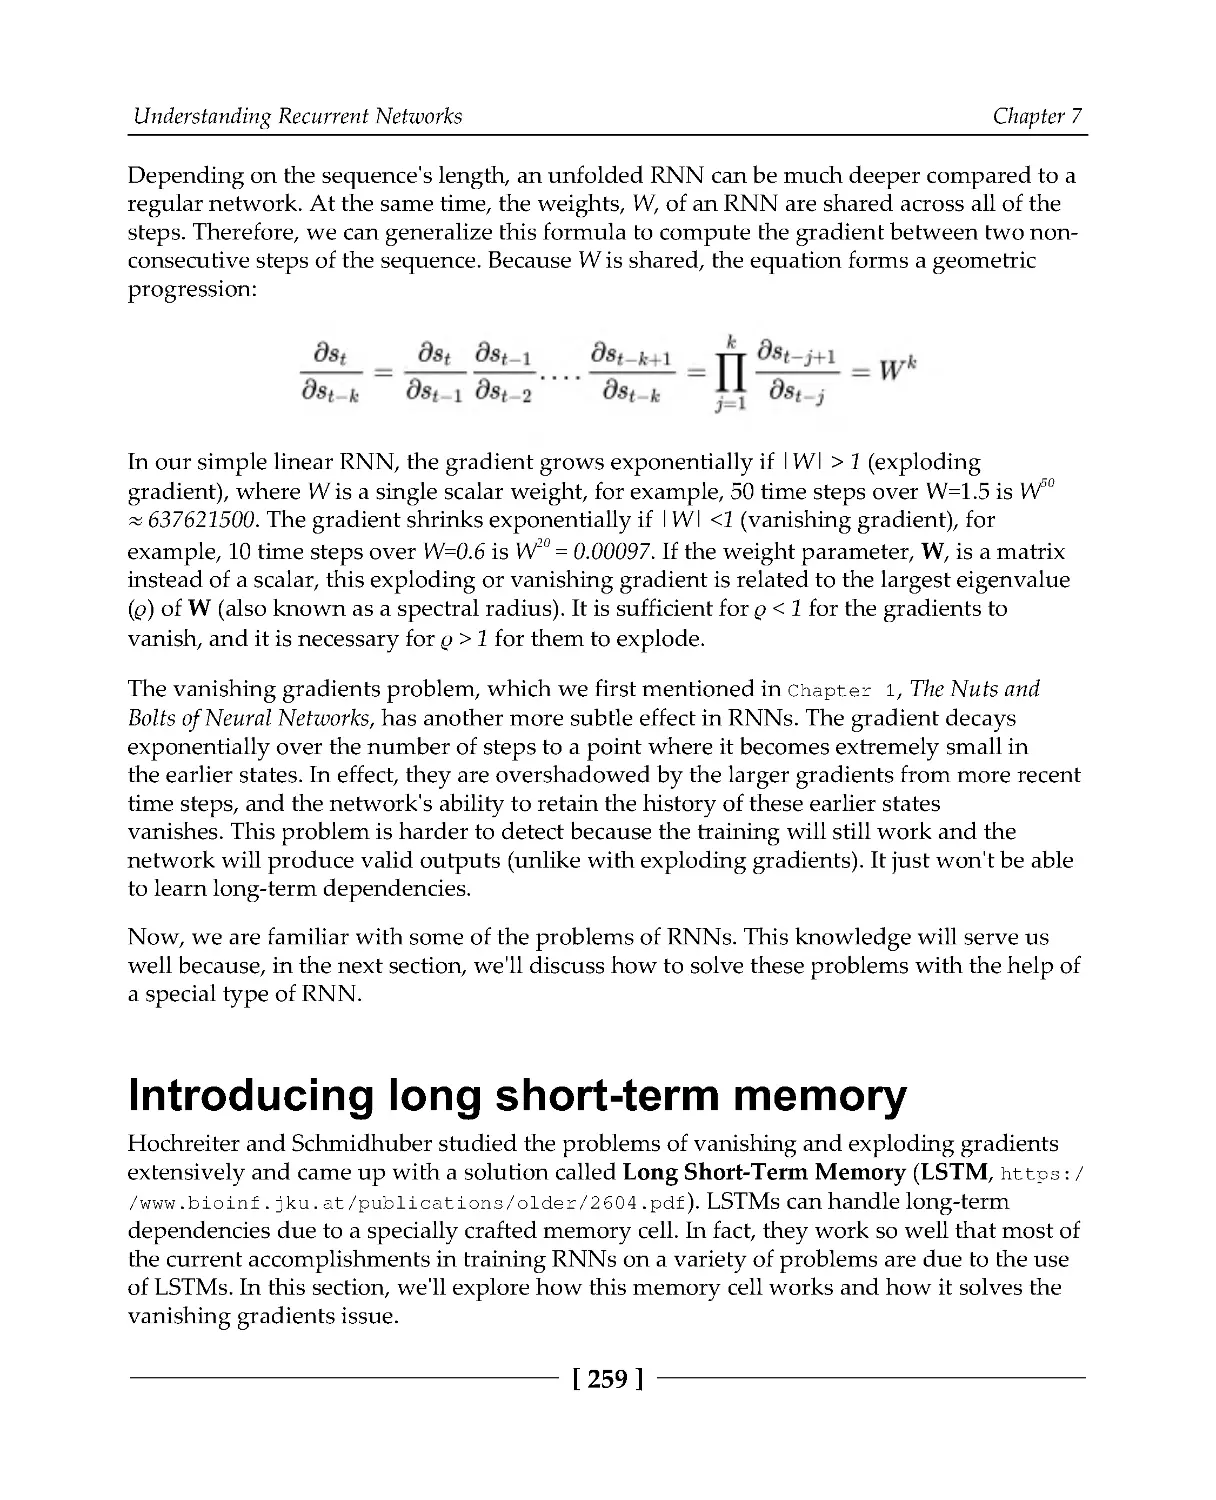 Introducing long short-term memory